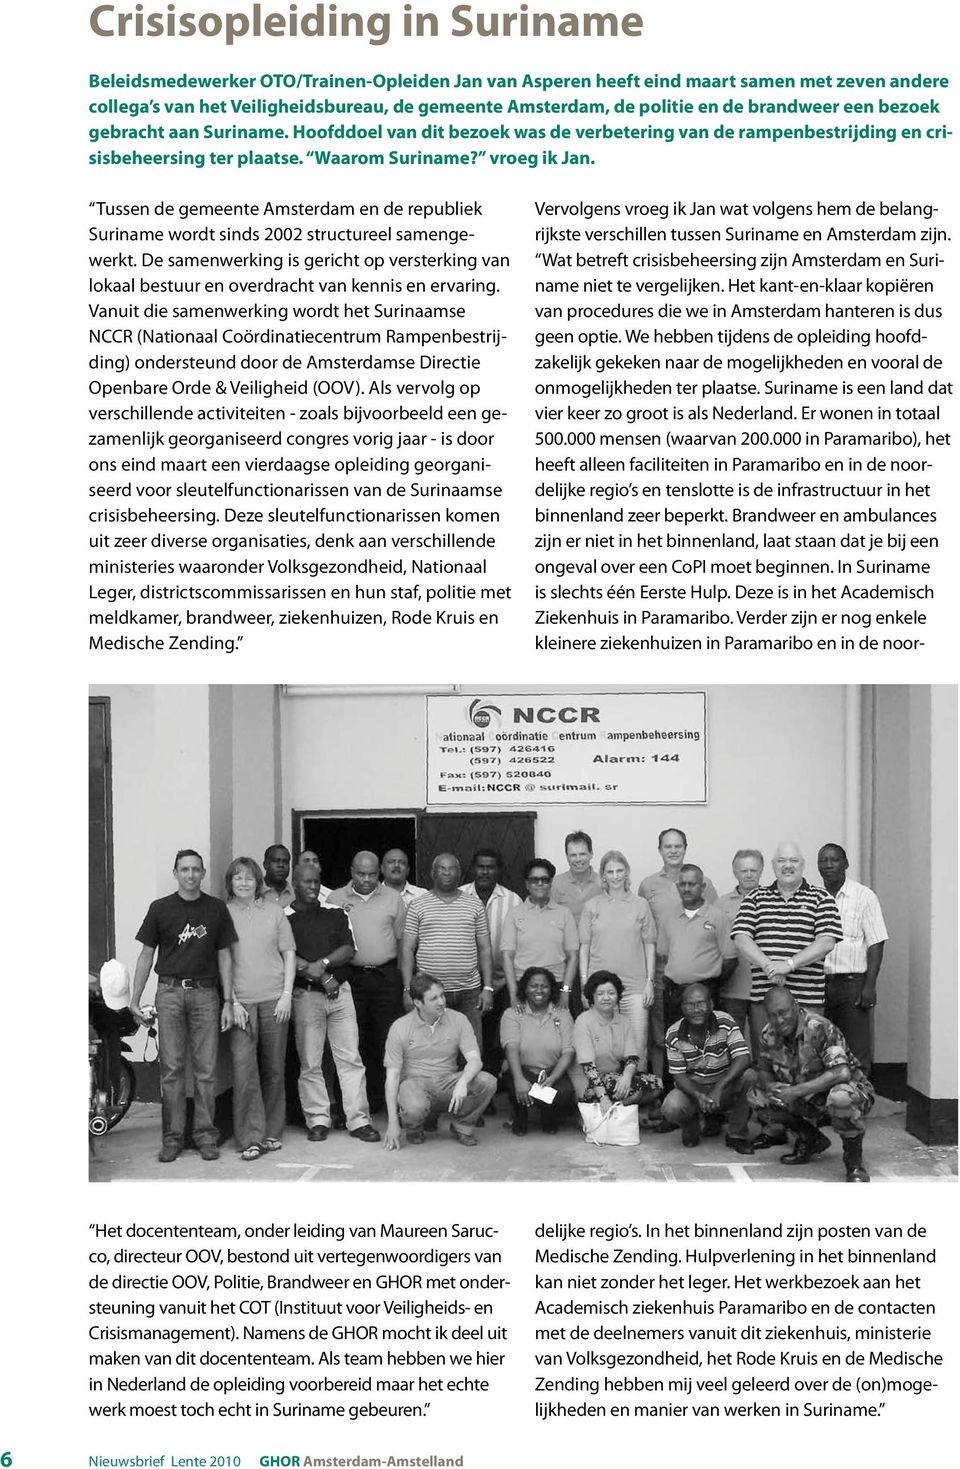 Tussen de gemeente Amsterdam en de republiek Suriname wordt sinds 2002 structureel samengewerkt. De samenwerking is gericht op versterking van lokaal bestuur en overdracht van kennis en ervaring.